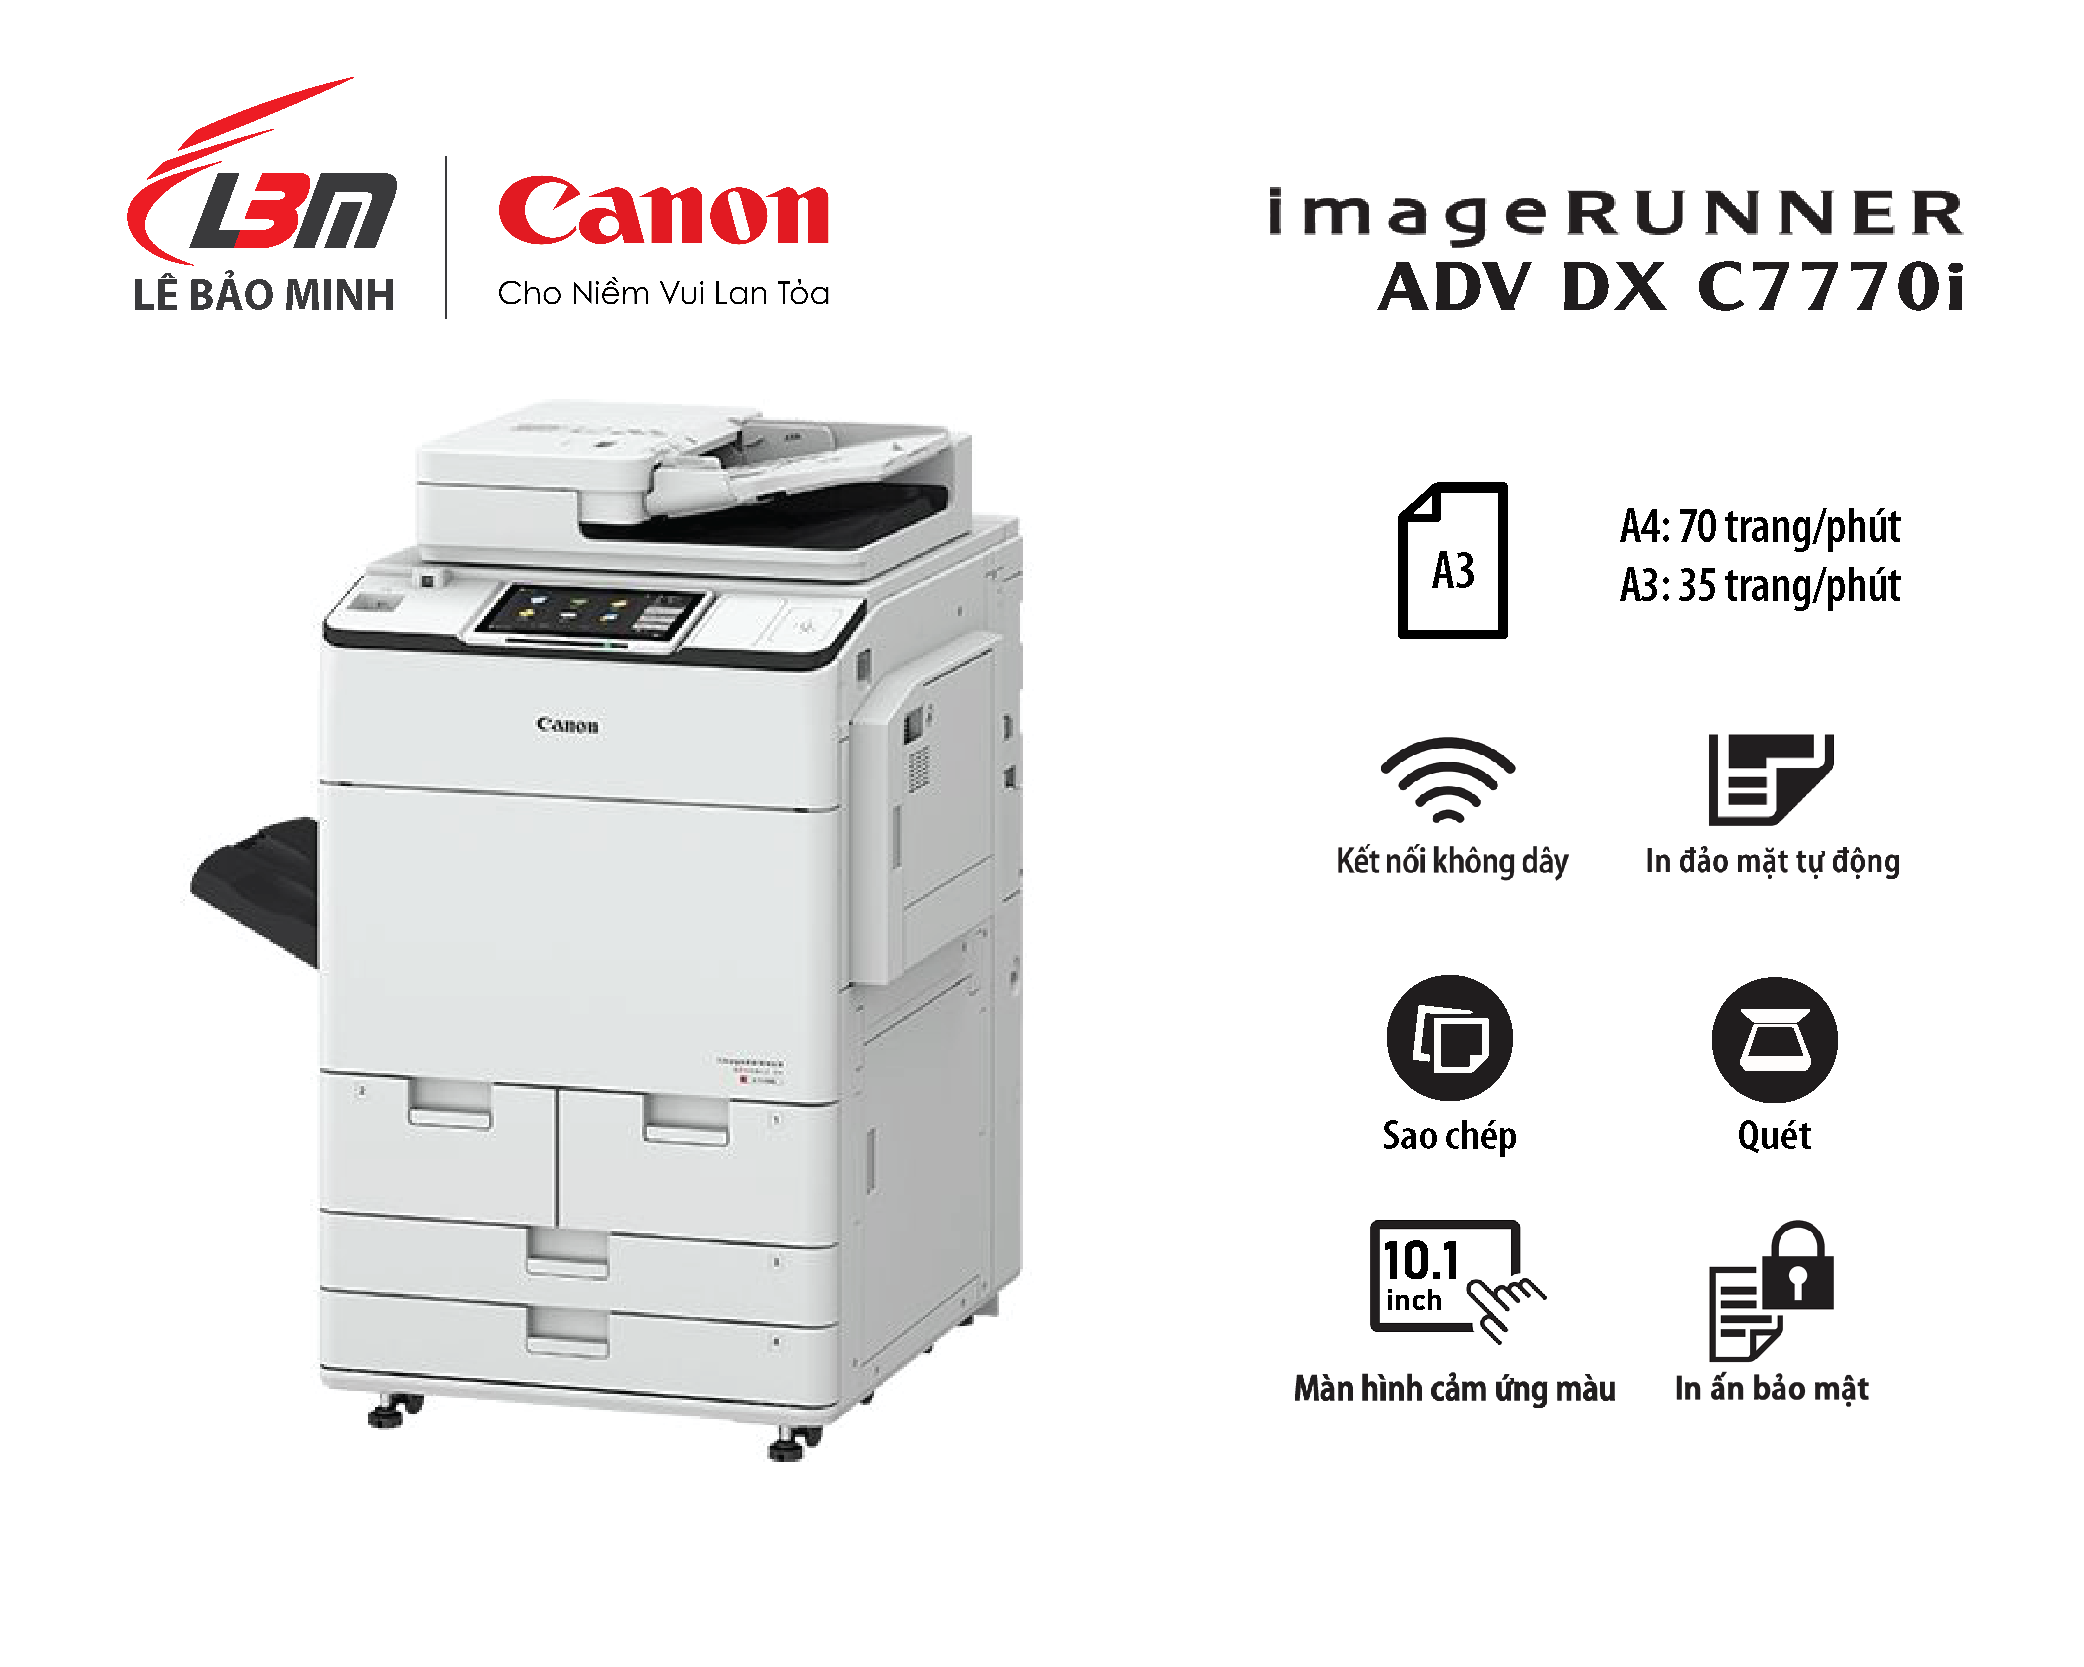 Photocopy iR-ADV DX C7770i